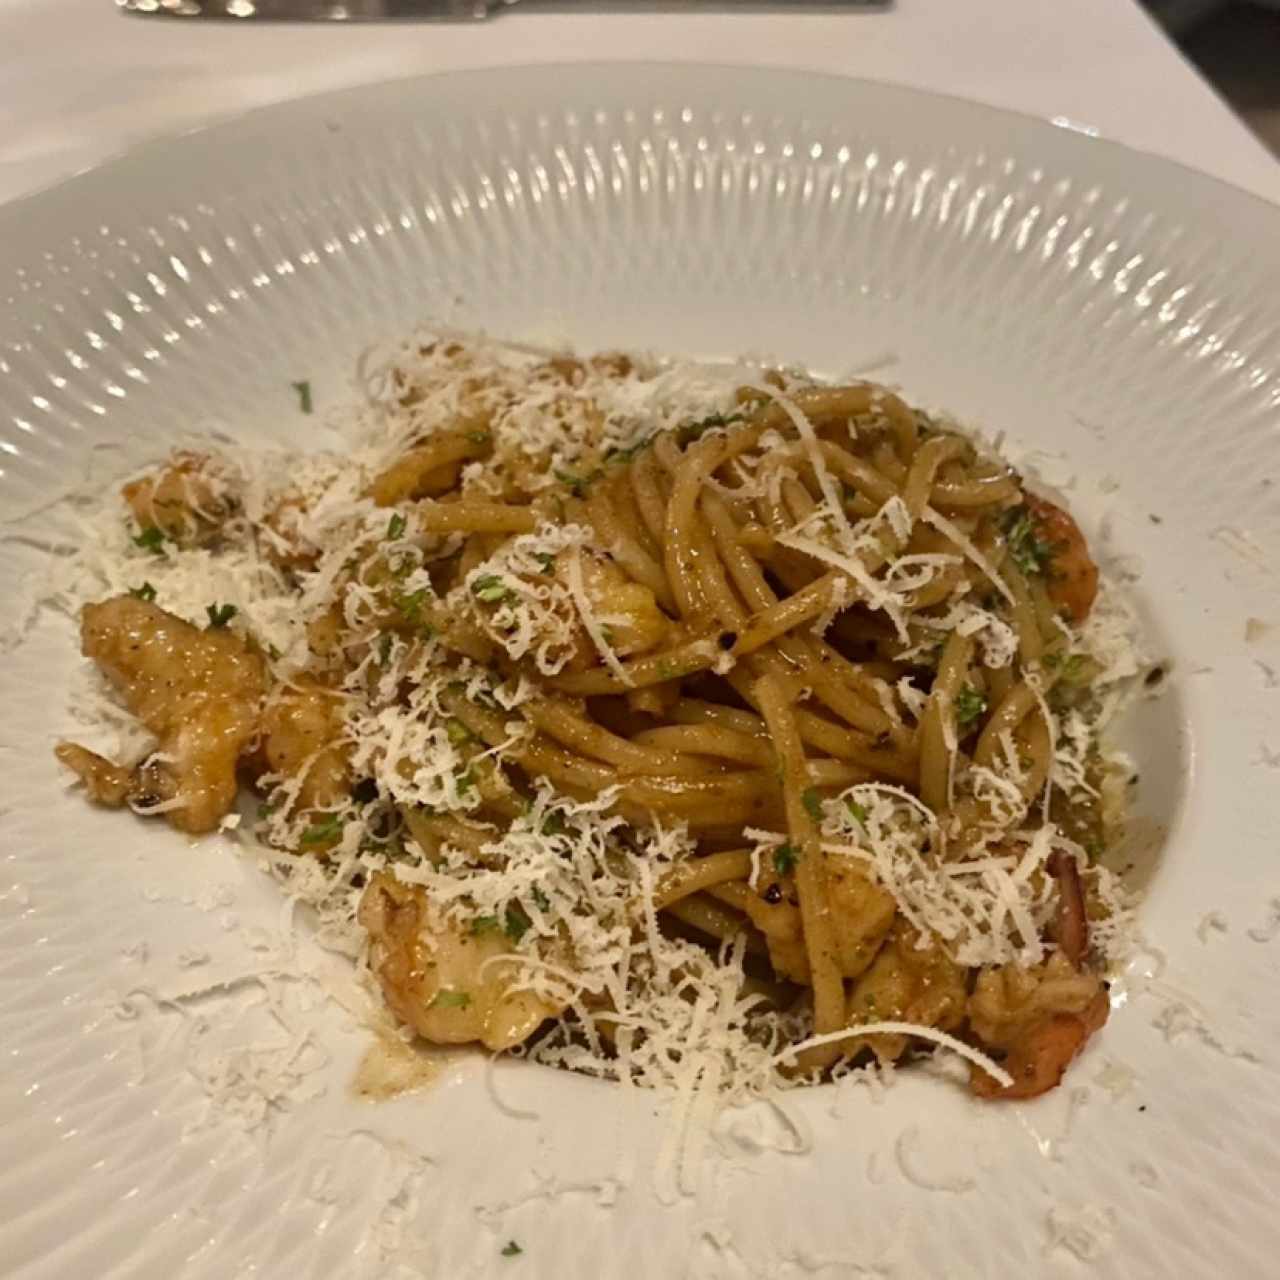 Spaghetti Al Gambero Truffato